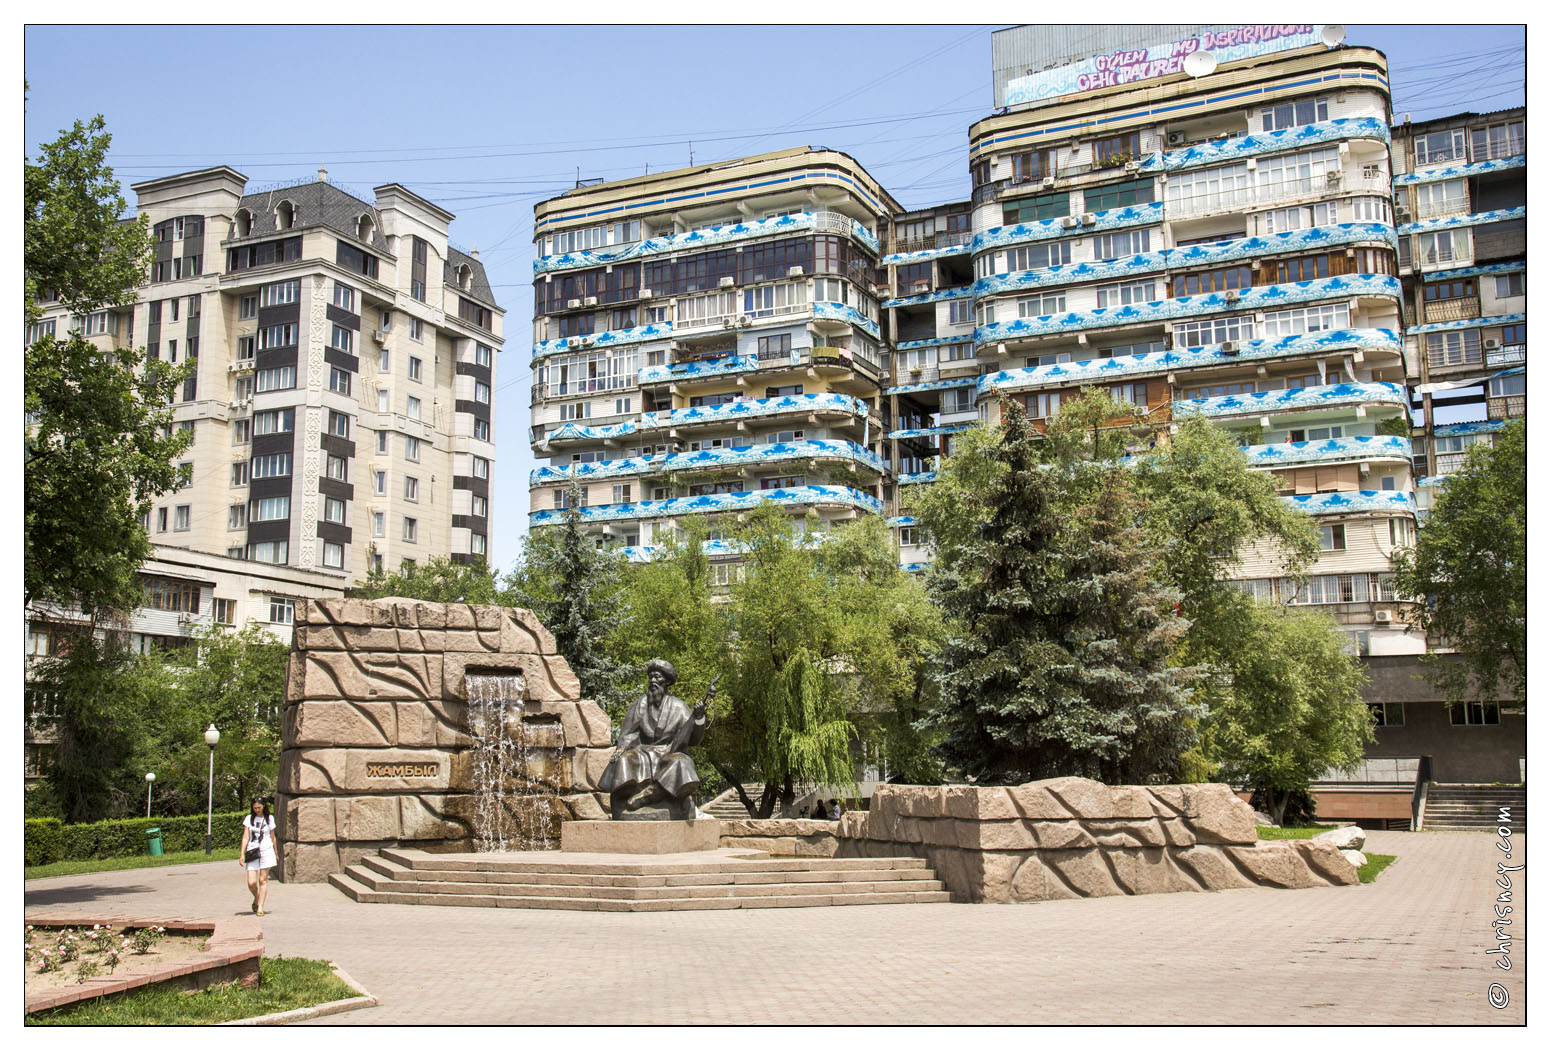 20140623-025_2202-Almaty_Jambyl_Jabayev.jpg